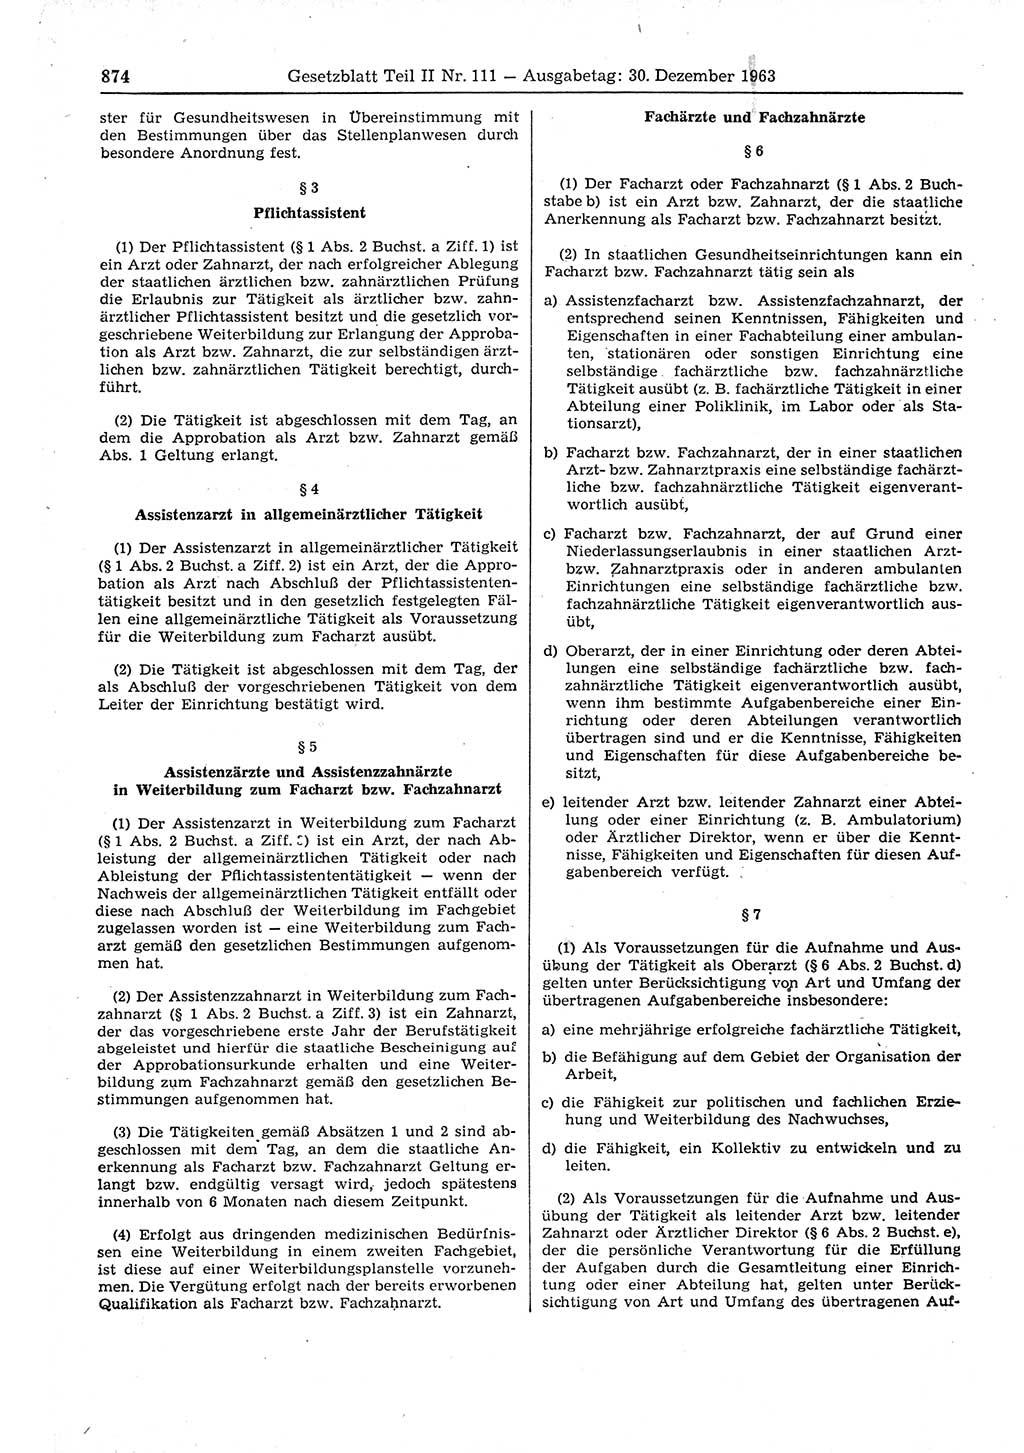 Gesetzblatt (GBl.) der Deutschen Demokratischen Republik (DDR) Teil ⅠⅠ 1963, Seite 874 (GBl. DDR ⅠⅠ 1963, S. 874)